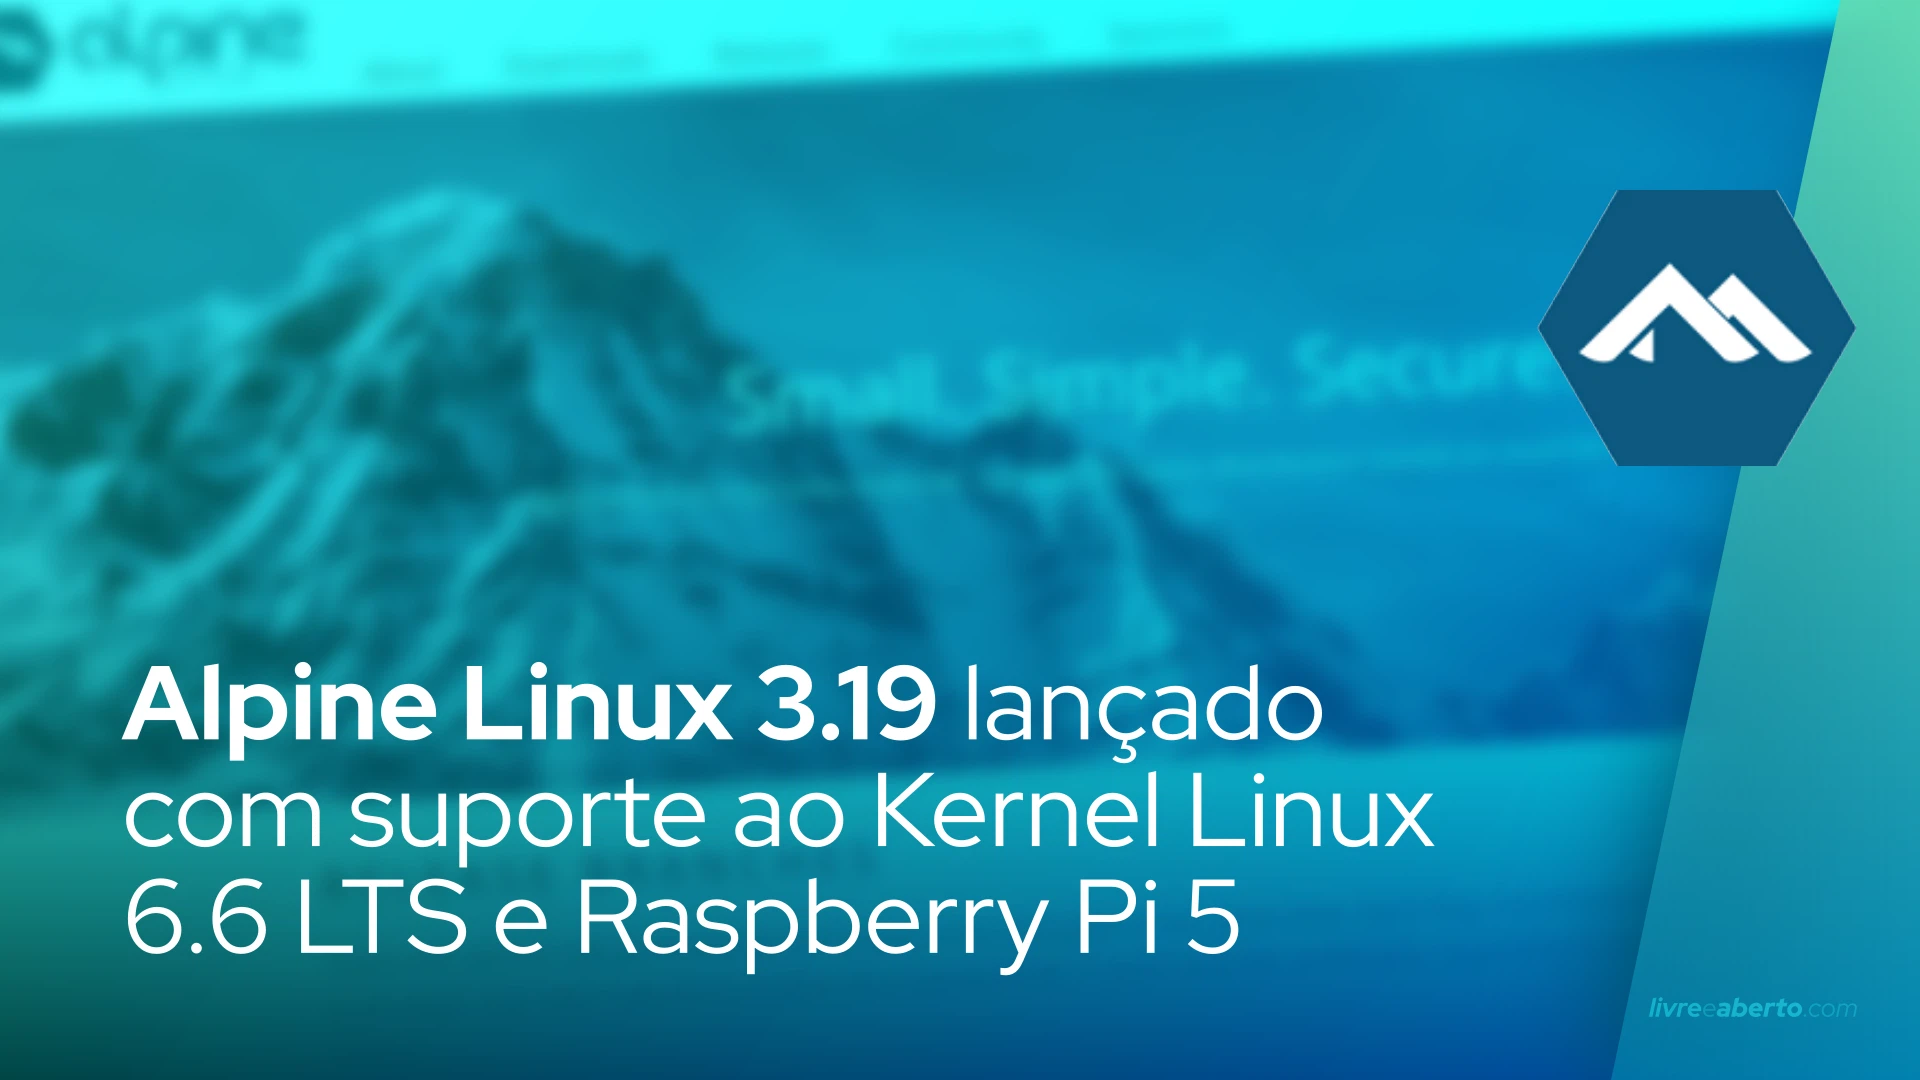 Alpine Linux 3.19 lançado com suporte ao Kernel Linux 6.6 LTS e Raspberry Pi 5